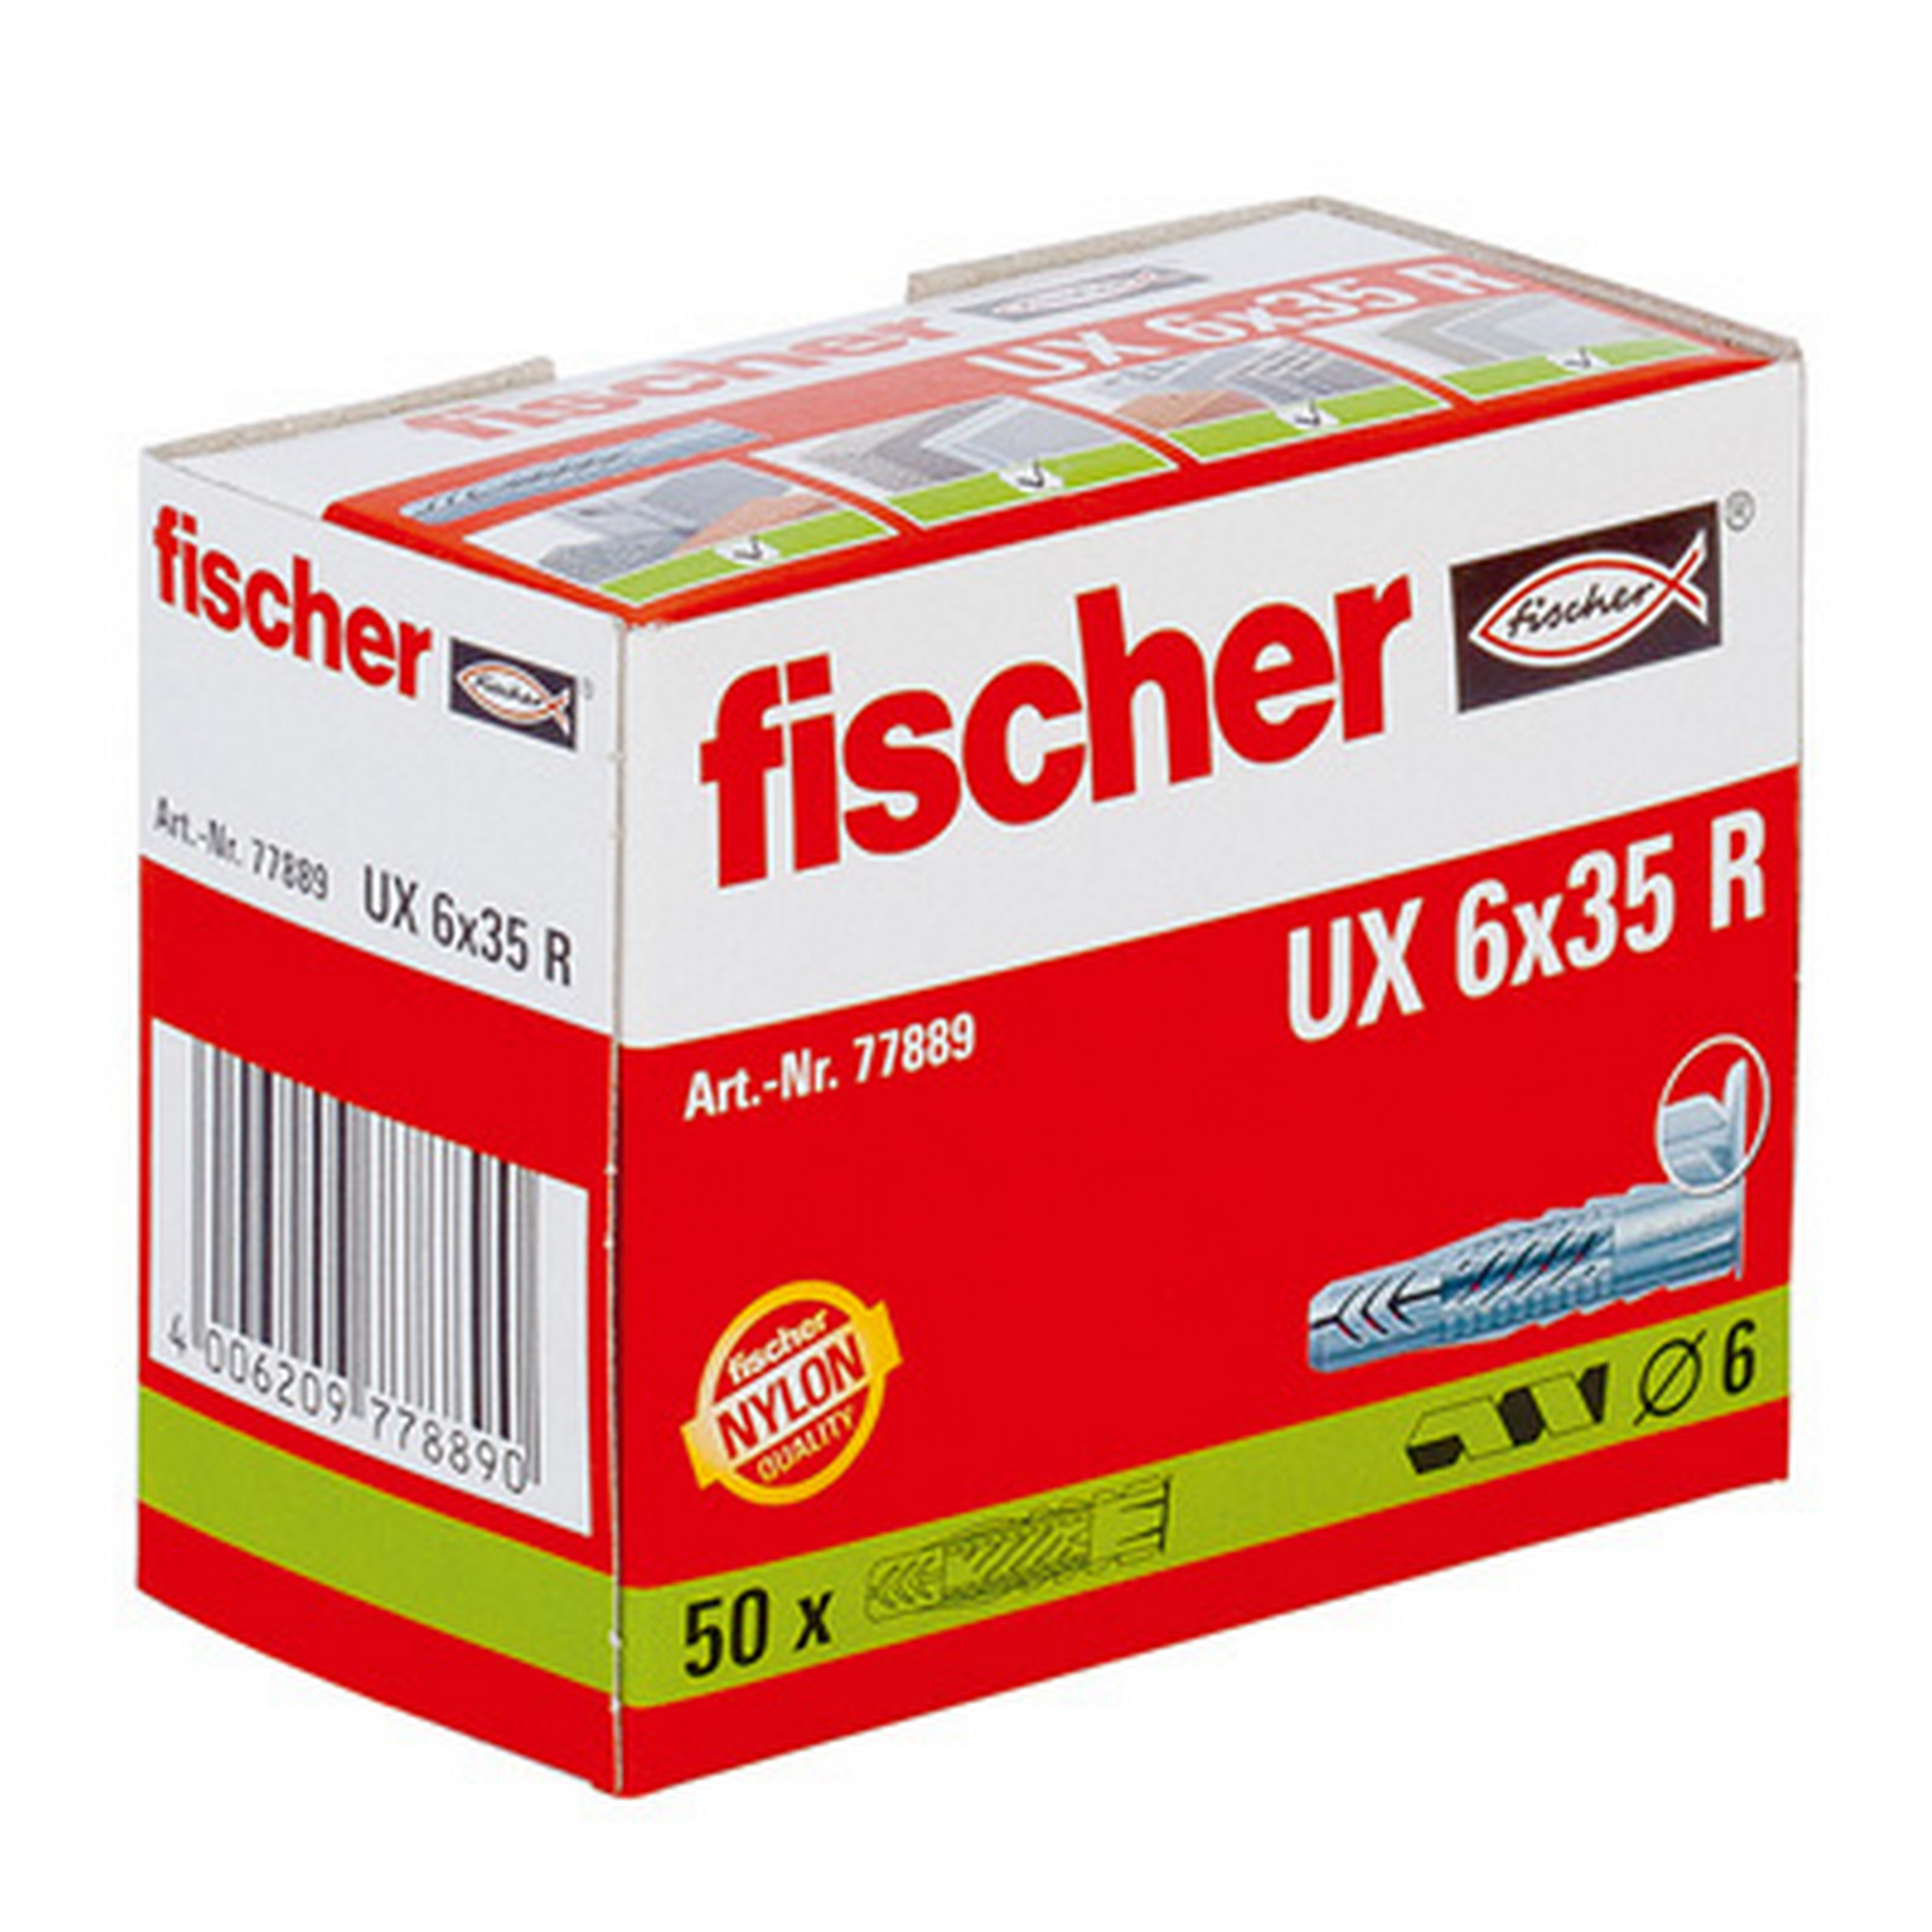 fischer Universaldübel UX 6 x 35 R mit Rand 50 Stück + product picture